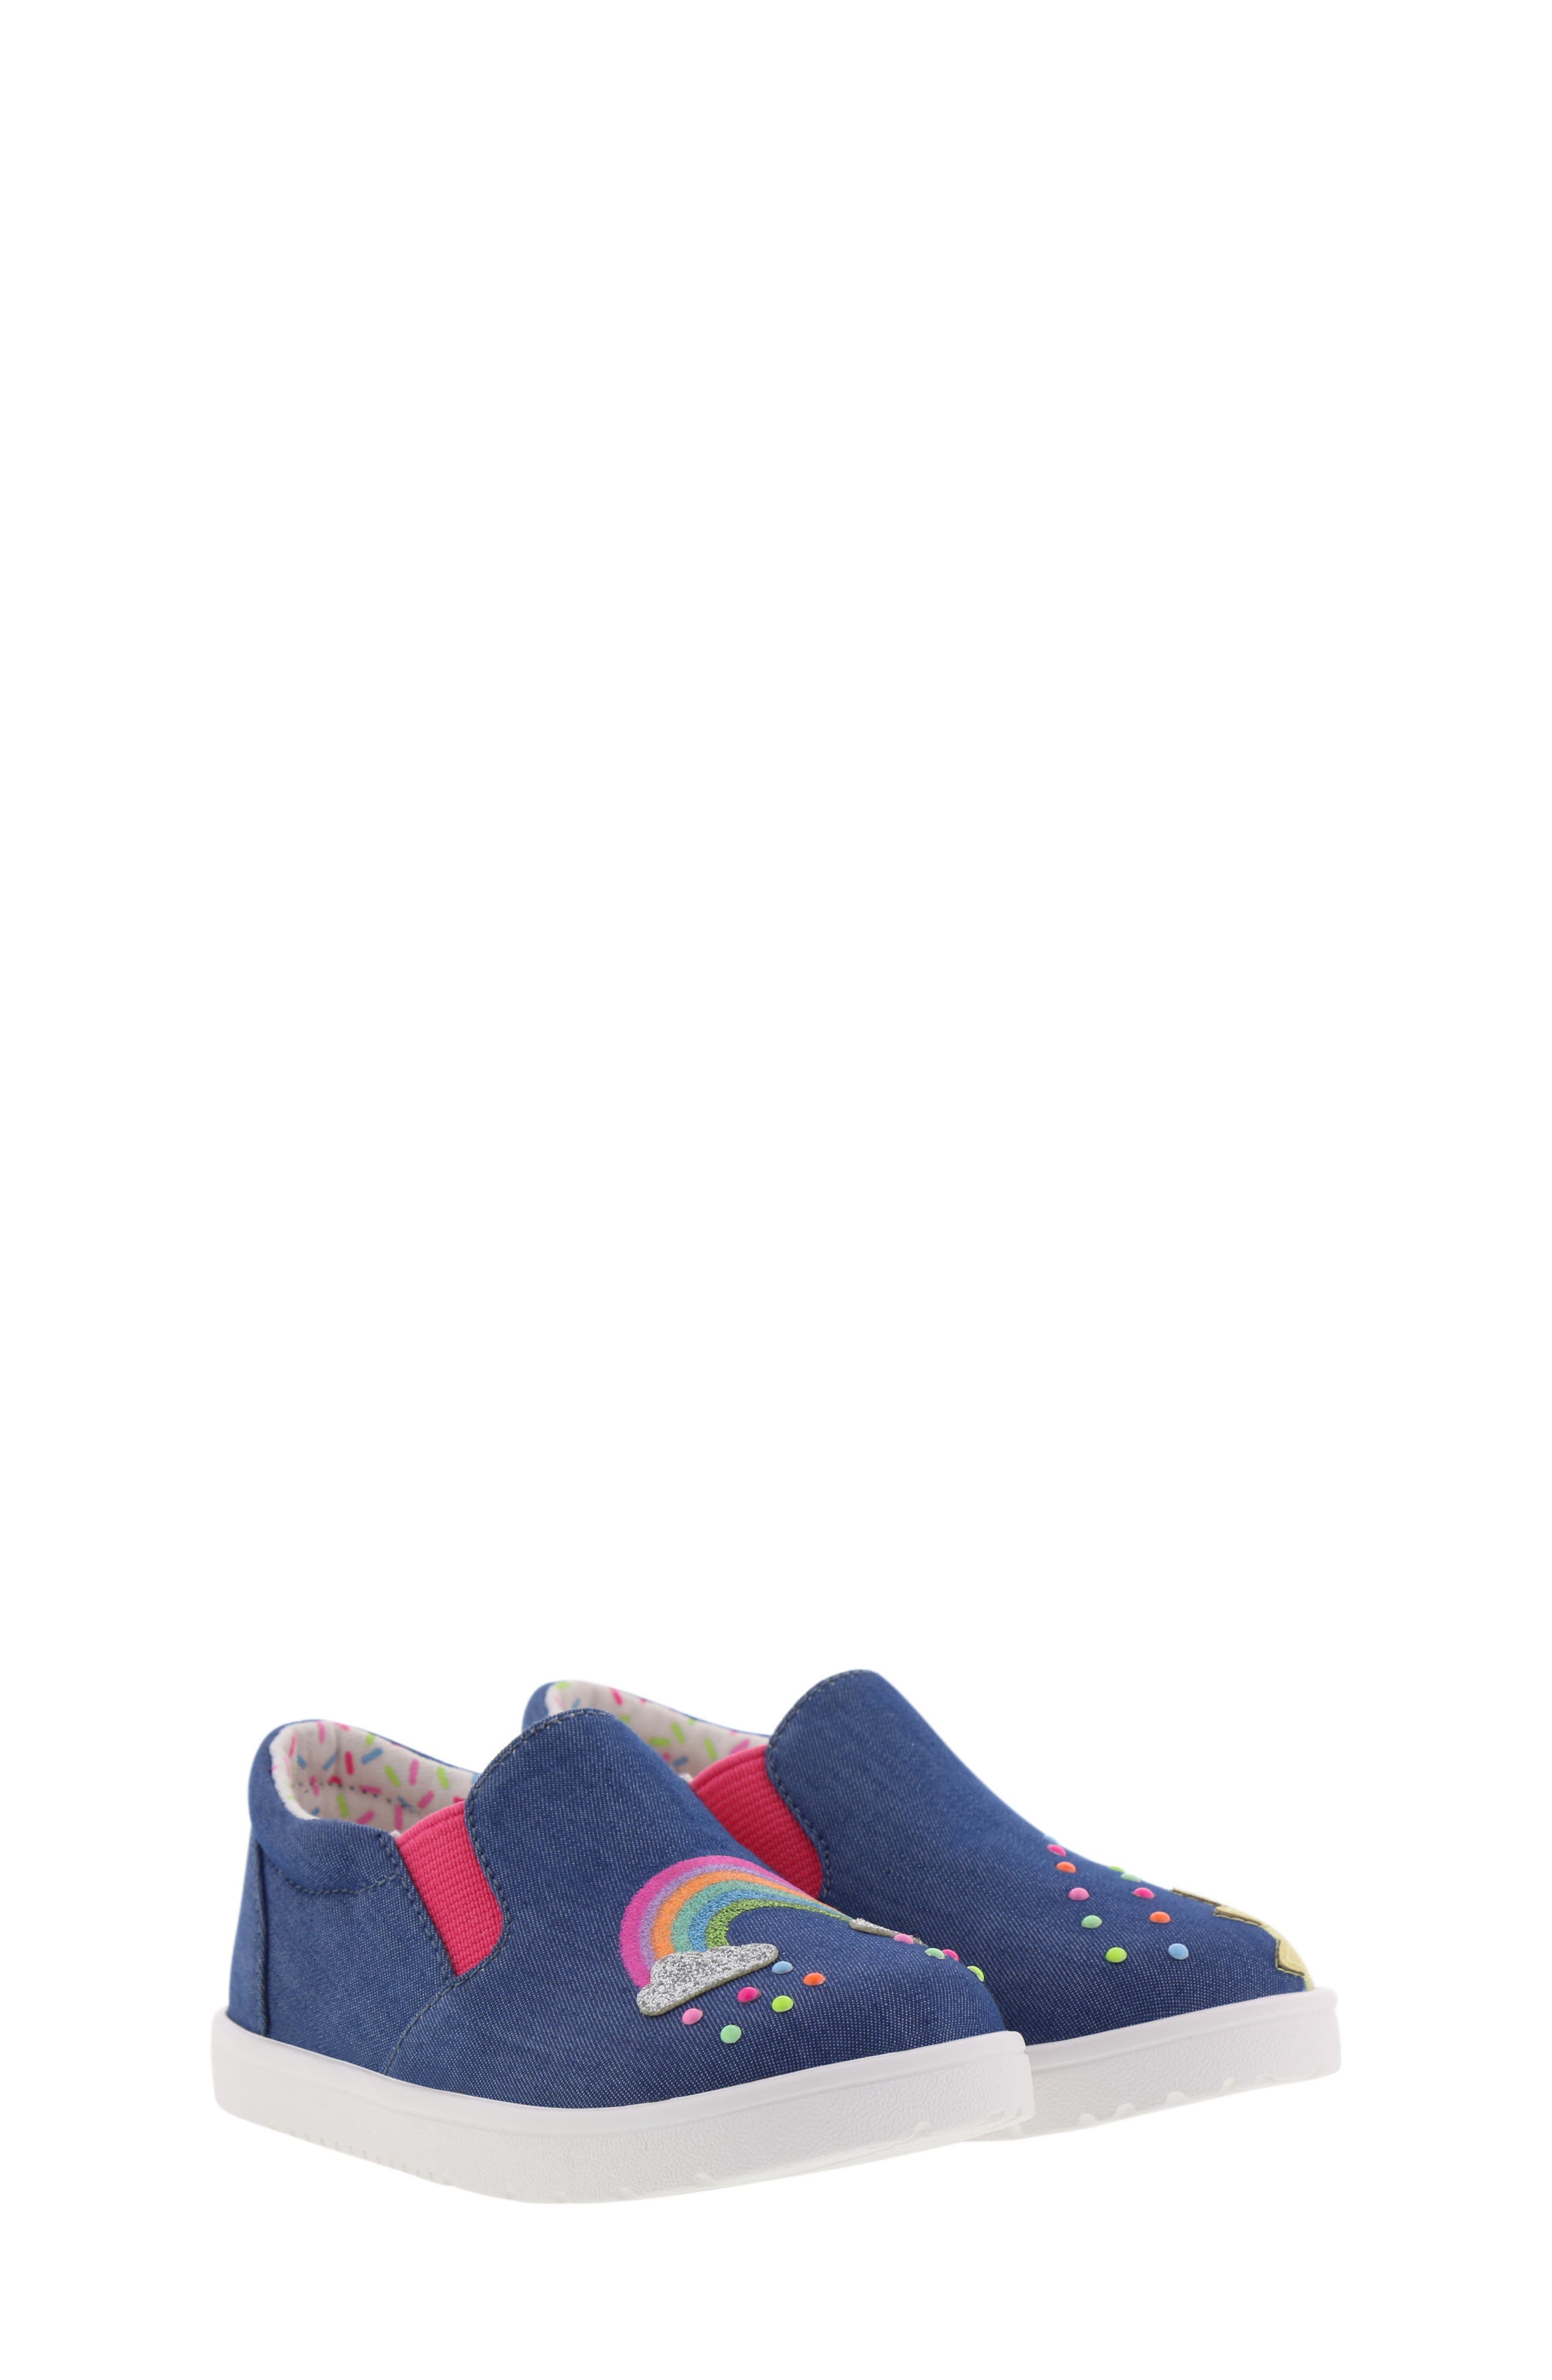 GTIN 033200000075 product image for Girl's B?rn Bailey Krissy Slip-On Glitter Sneaker | upcitemdb.com